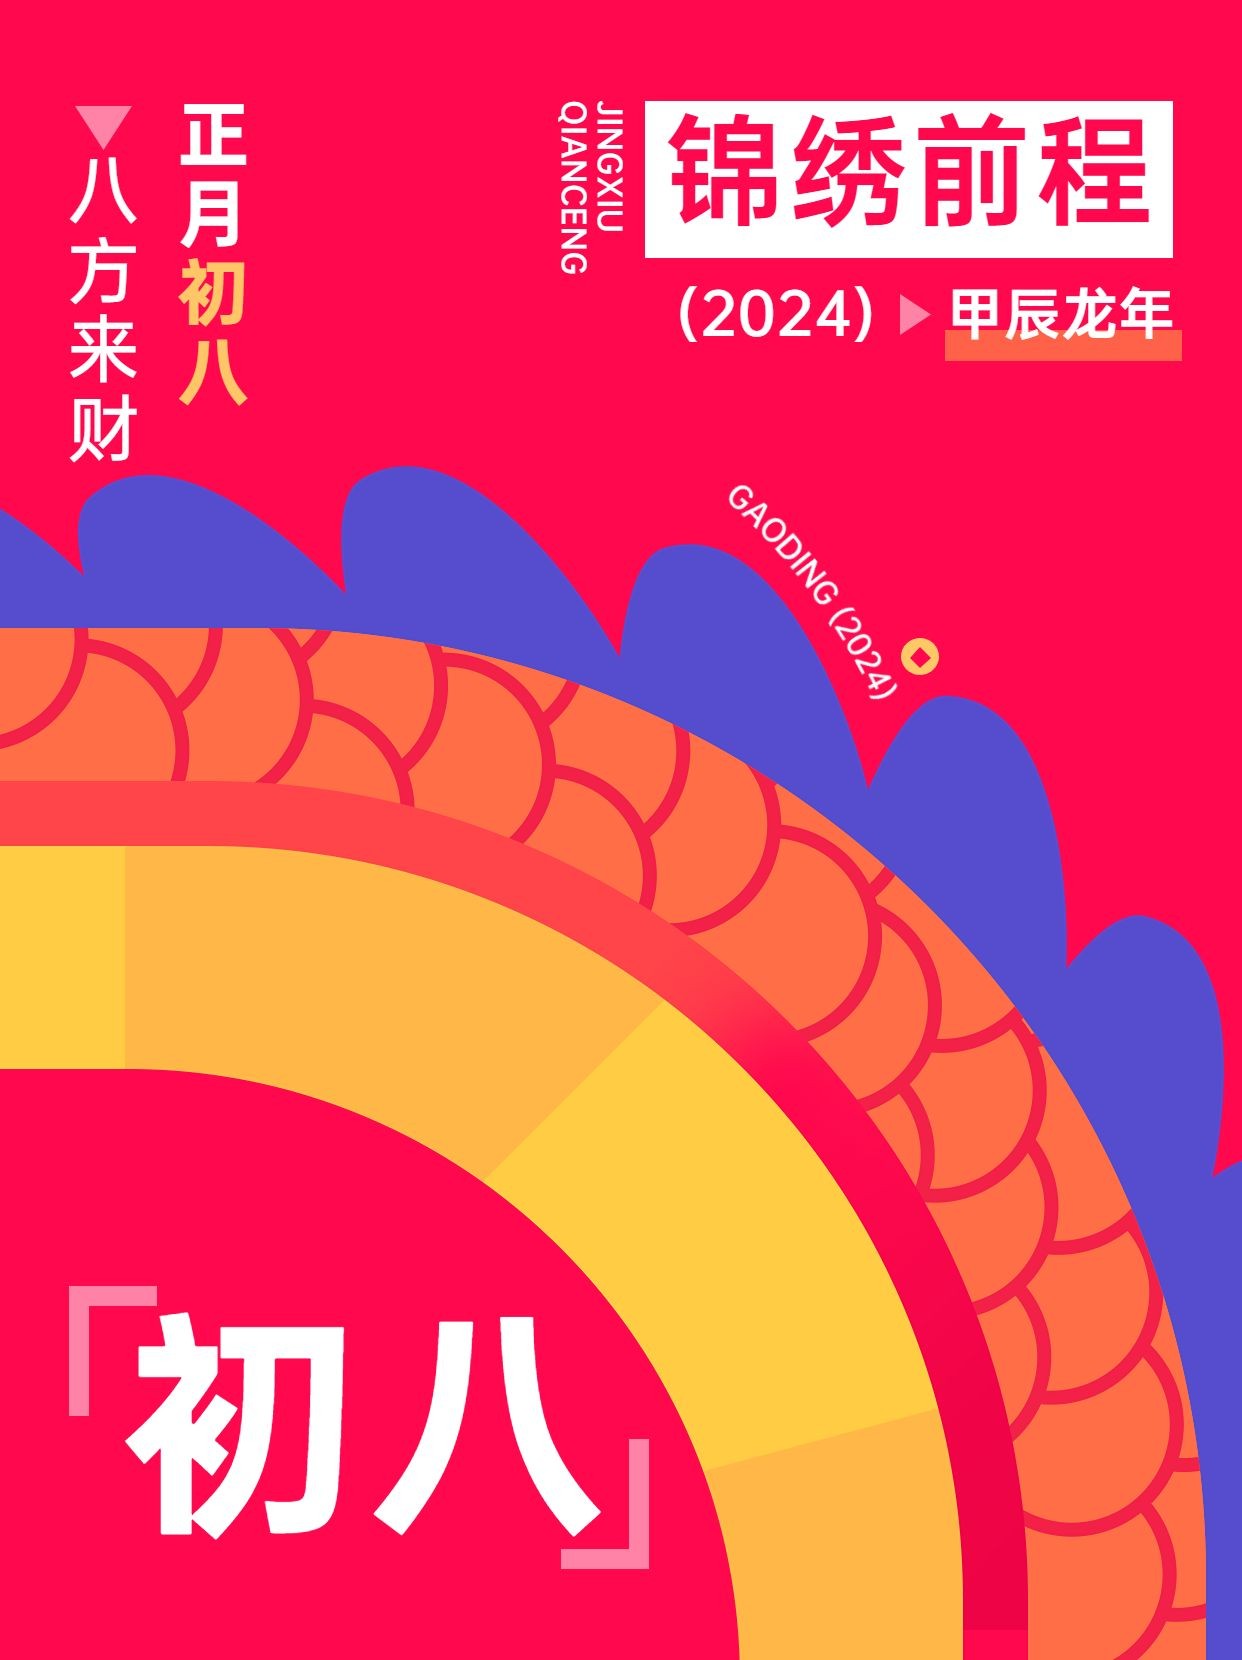 春节新年拜年祝福正月初八套系小红书配图预览效果